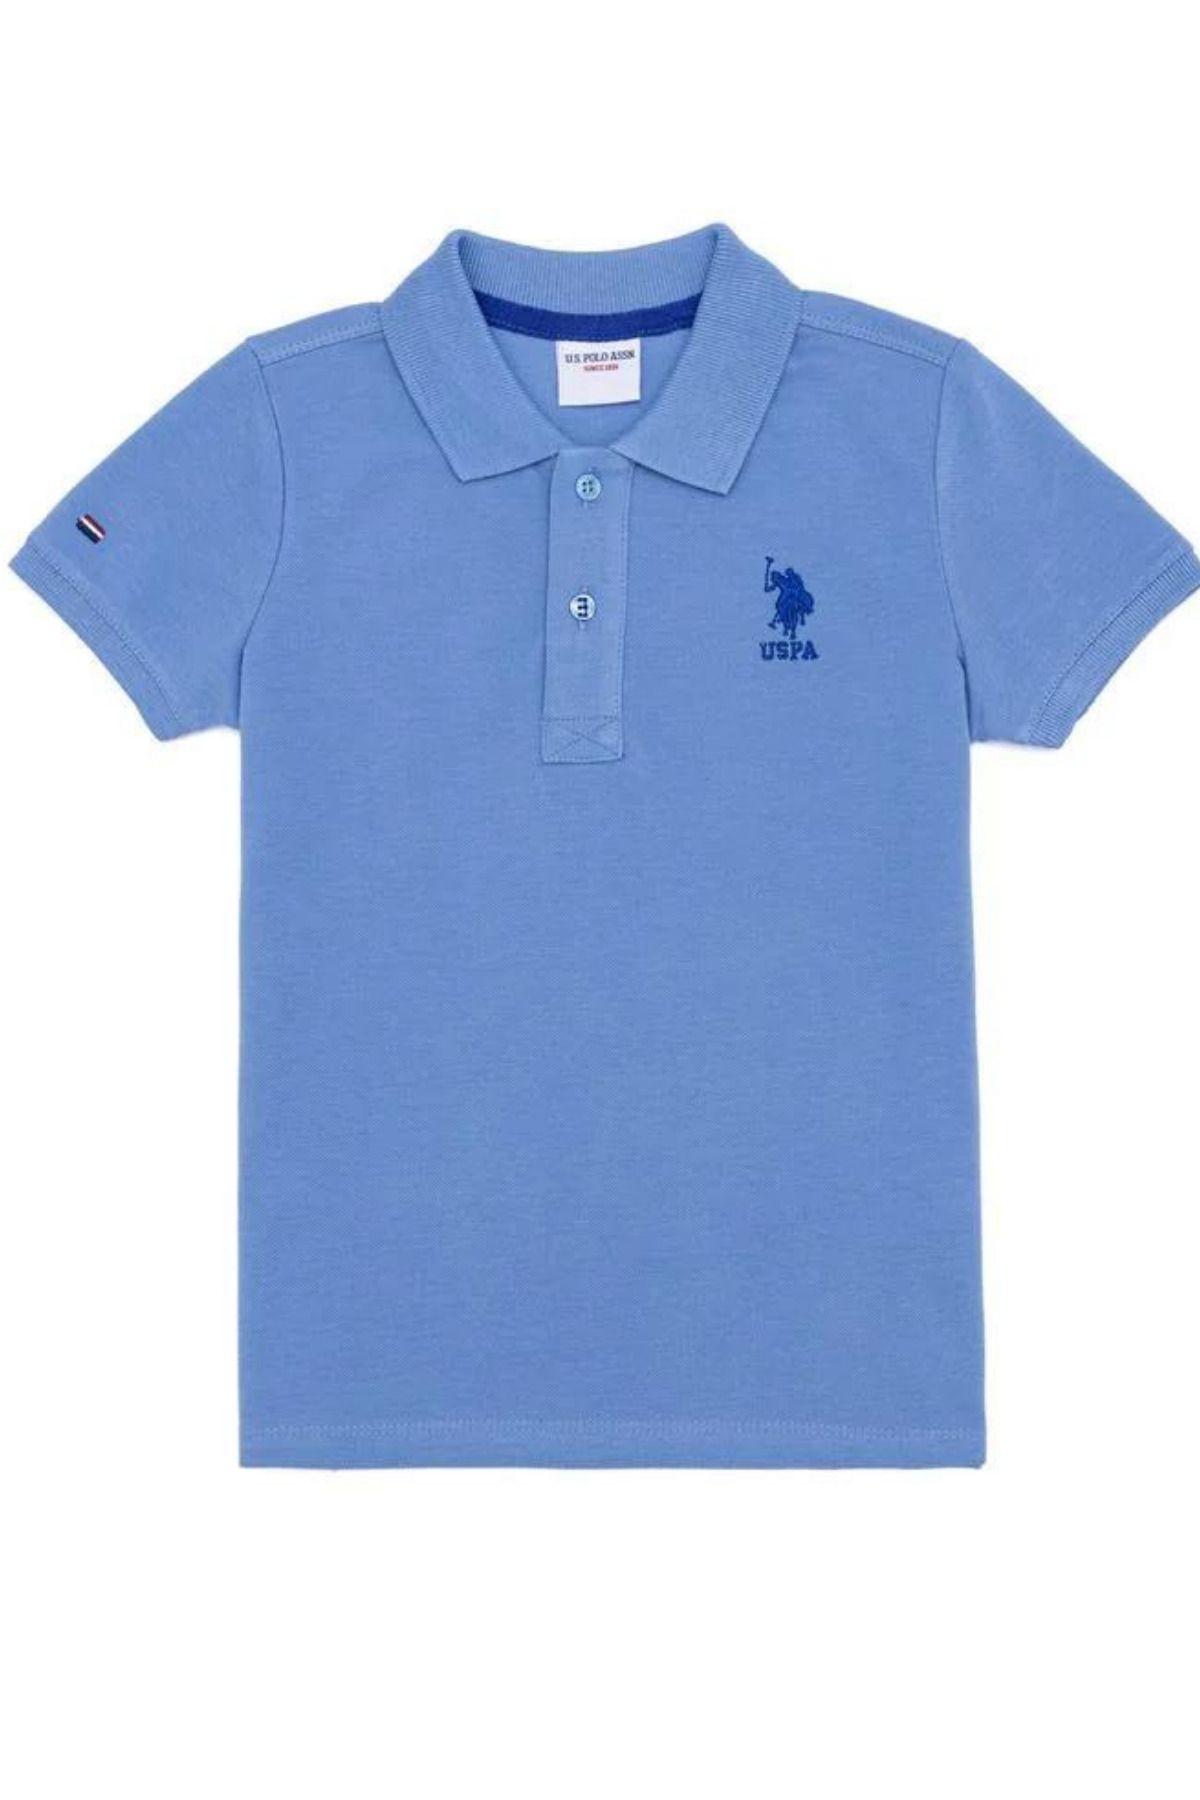 U.S. Polo Assn. Erkek Çocuk Koyu Mavi Polo Yaka Tişört